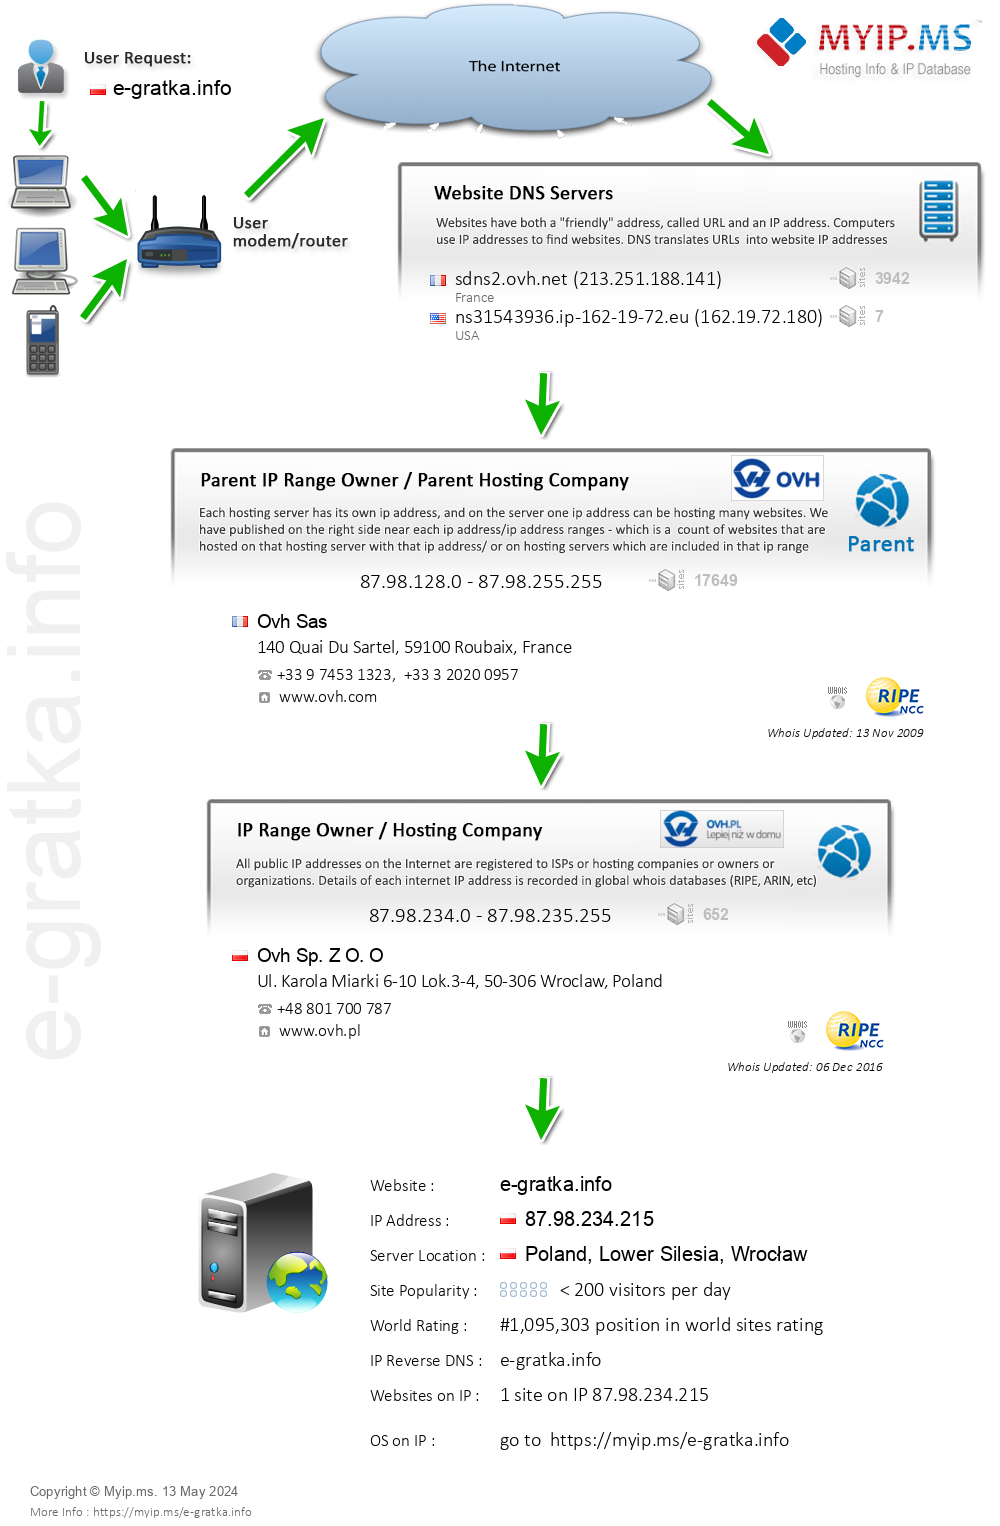 E-gratka.info - Website Hosting Visual IP Diagram